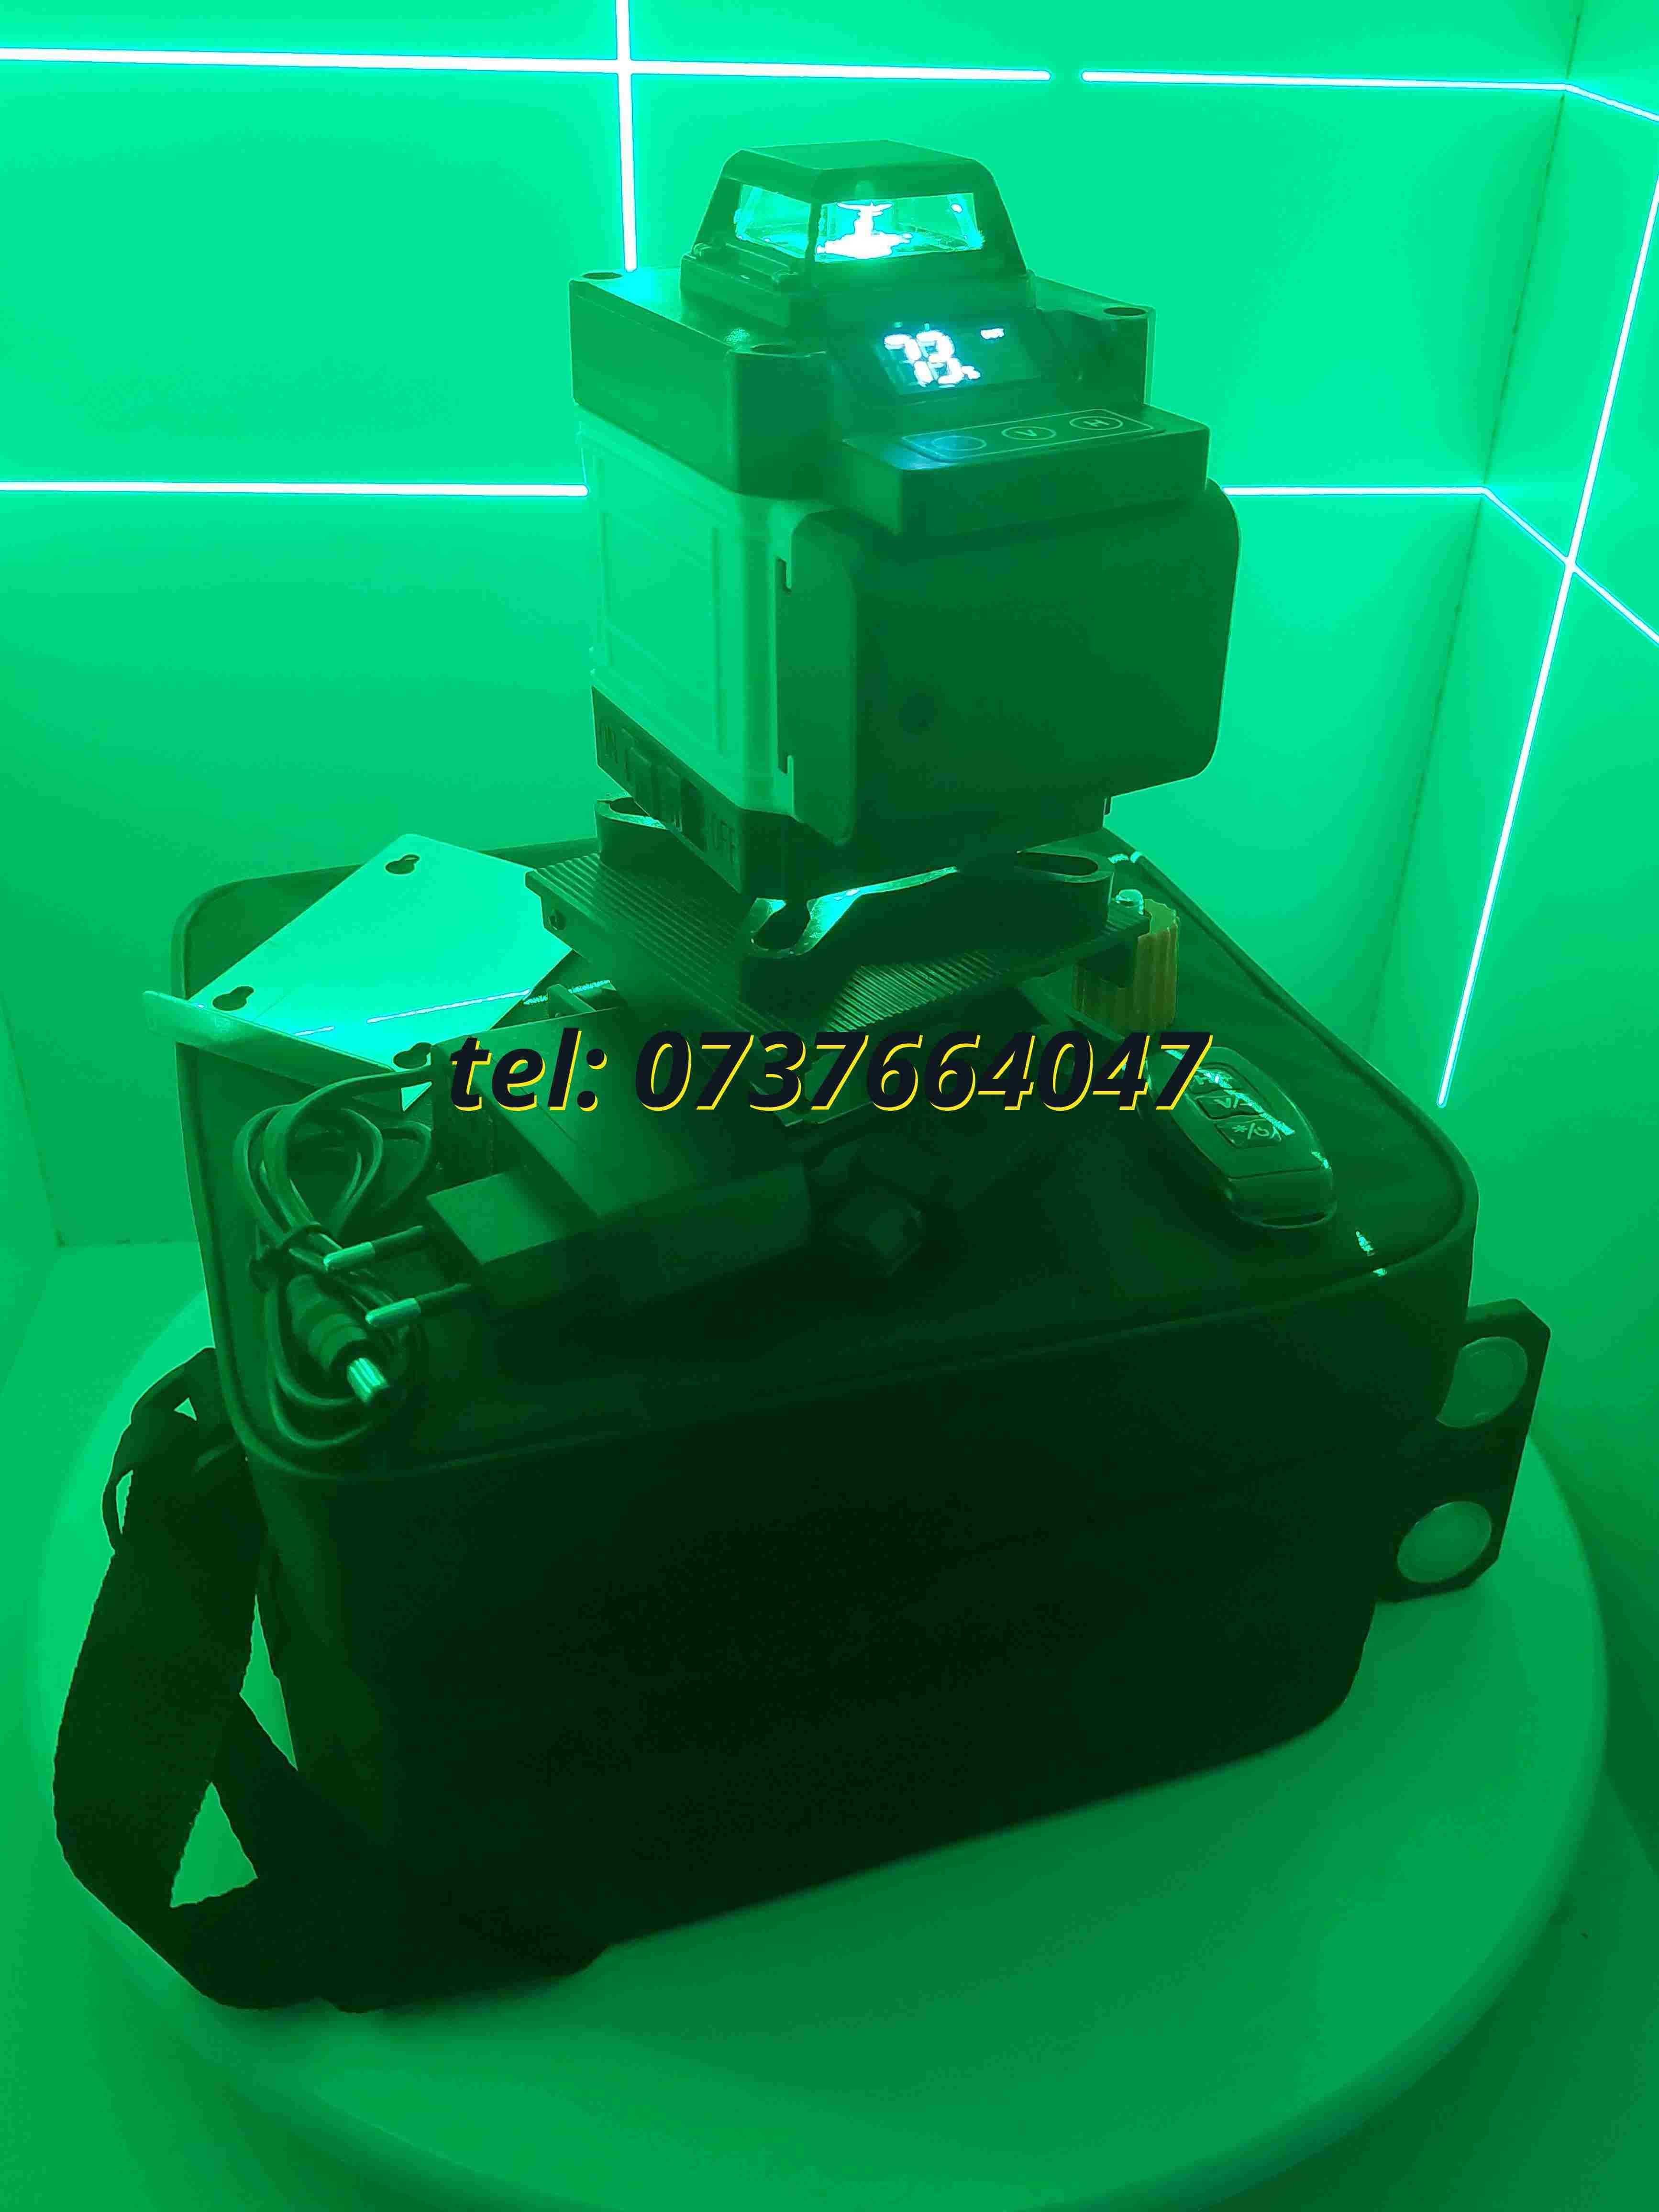 Oferta Nivela Laser  Profi Cu Autonivelare 4d 16 Linii 4x360 Unda